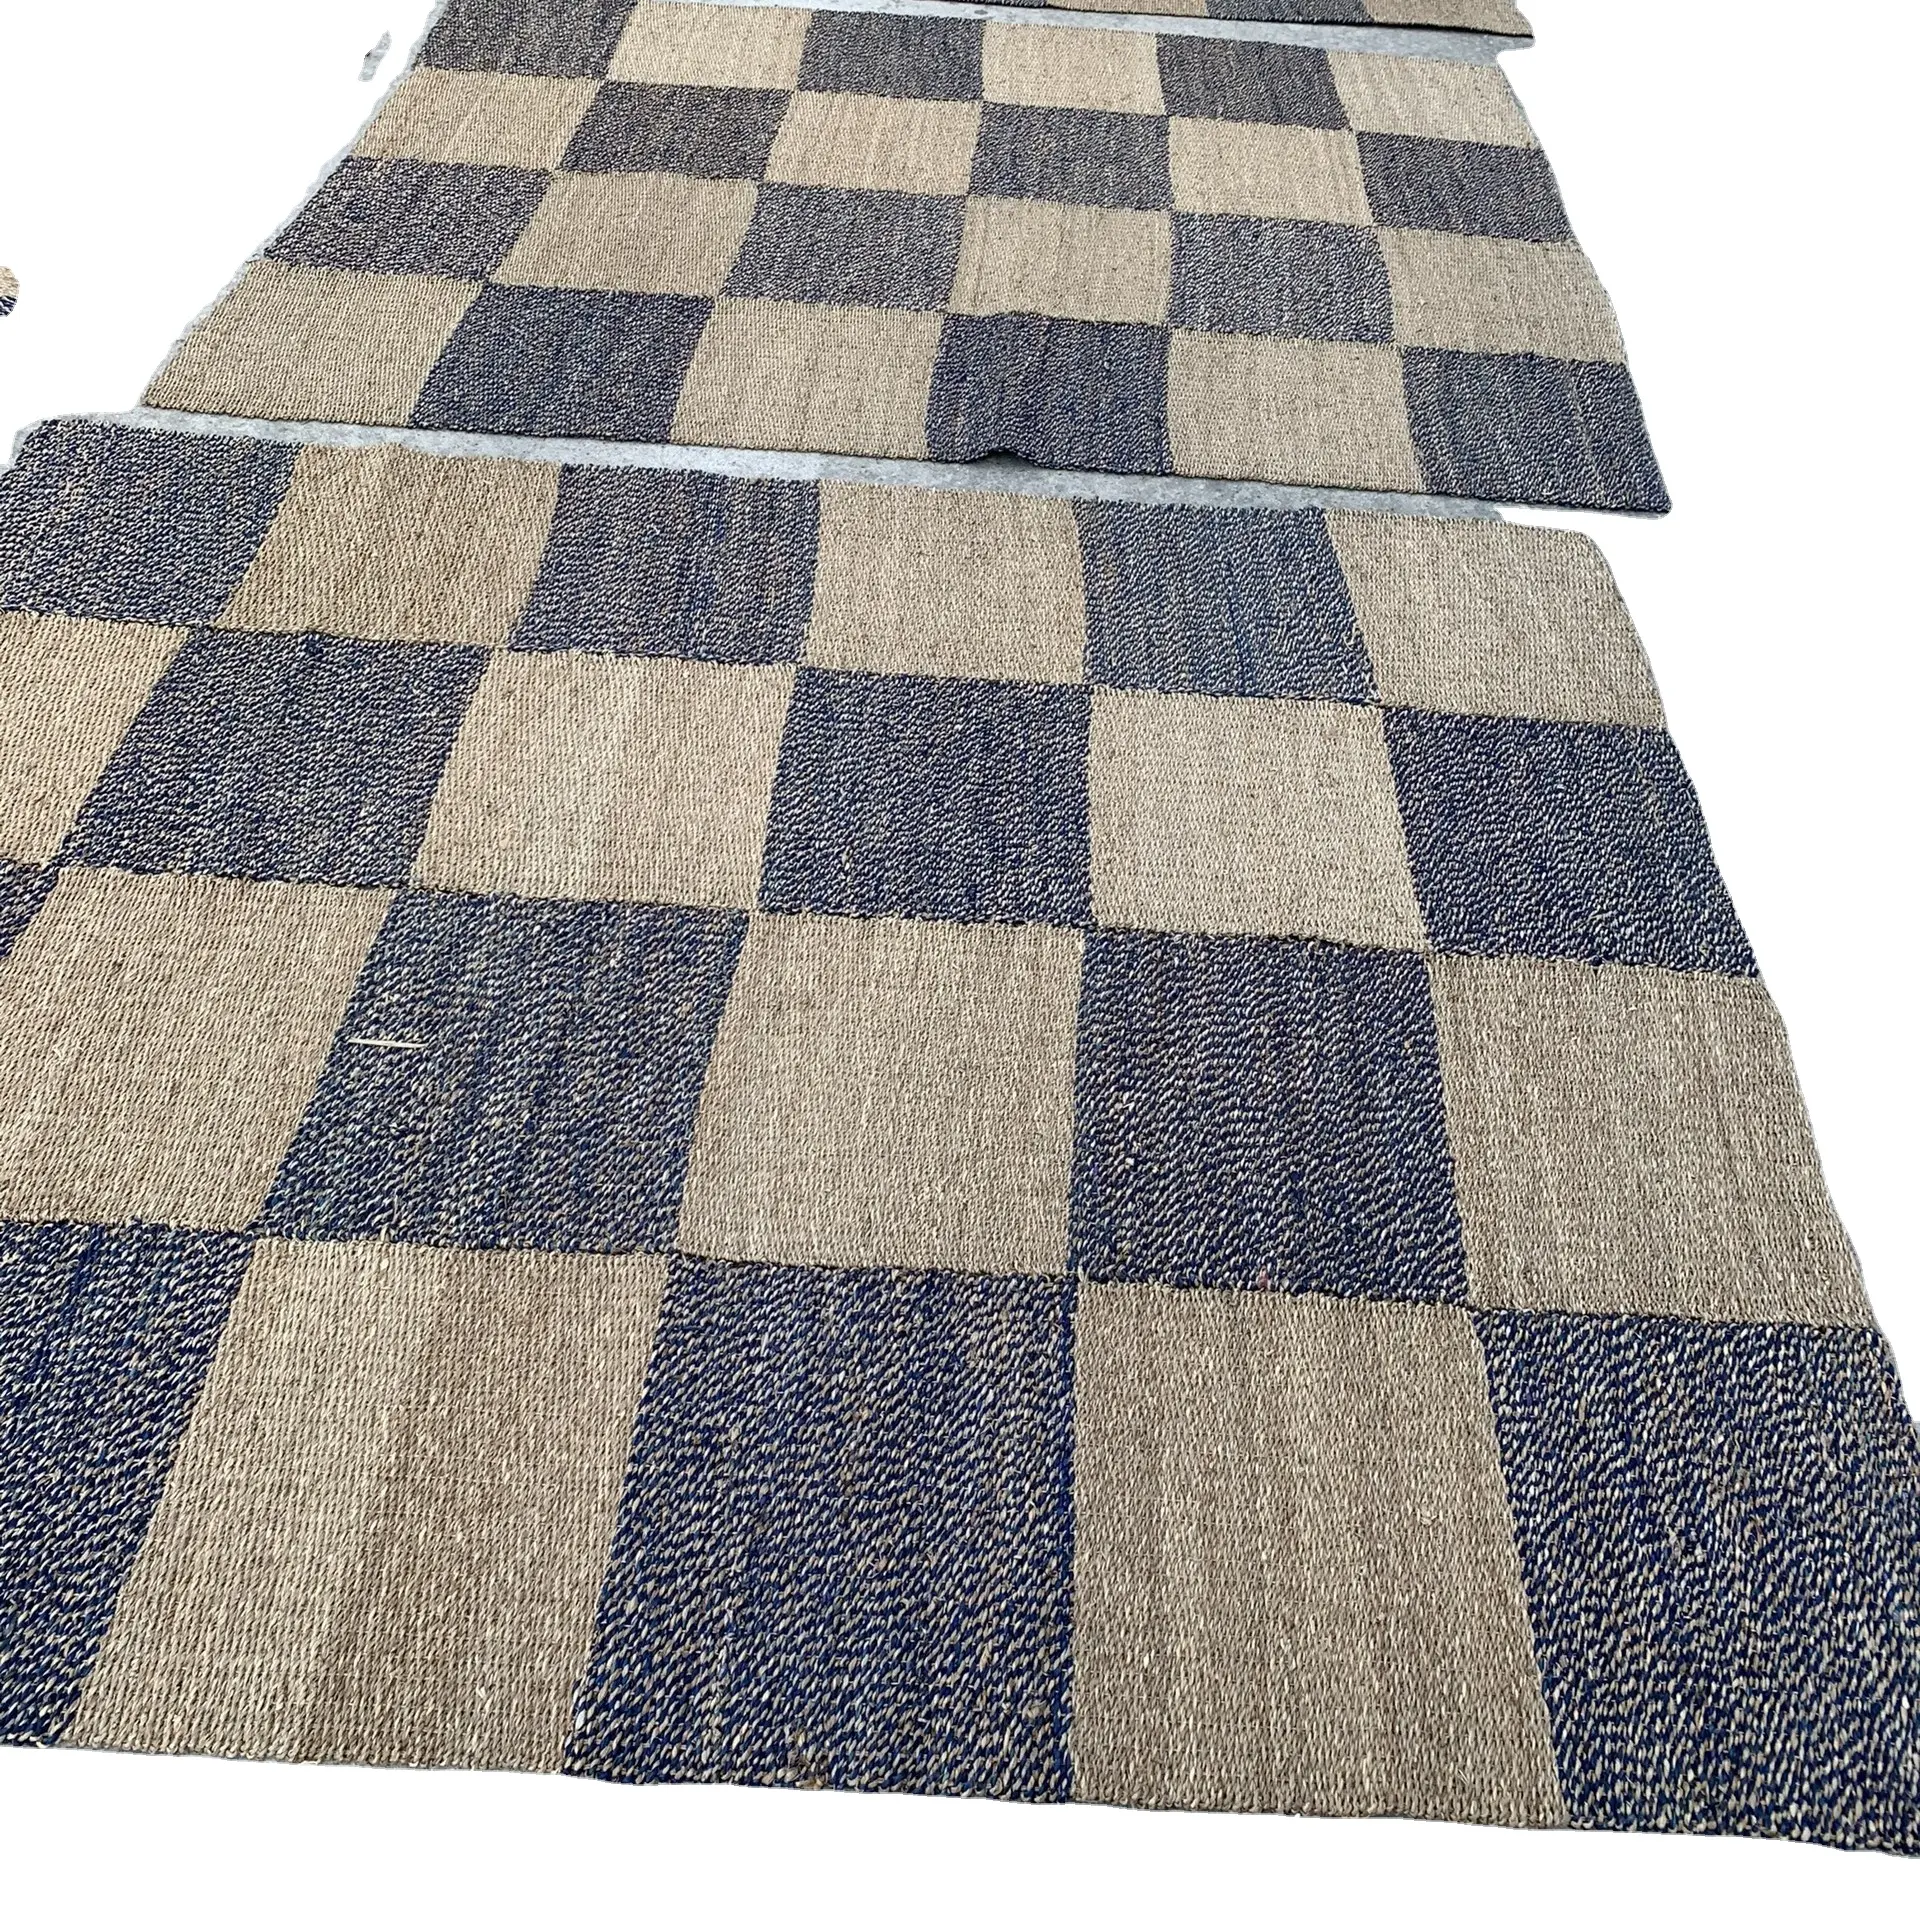 טבעי ים דשא מלבן דפוס שחמט שטיח יפה יד קלוע ים דשא